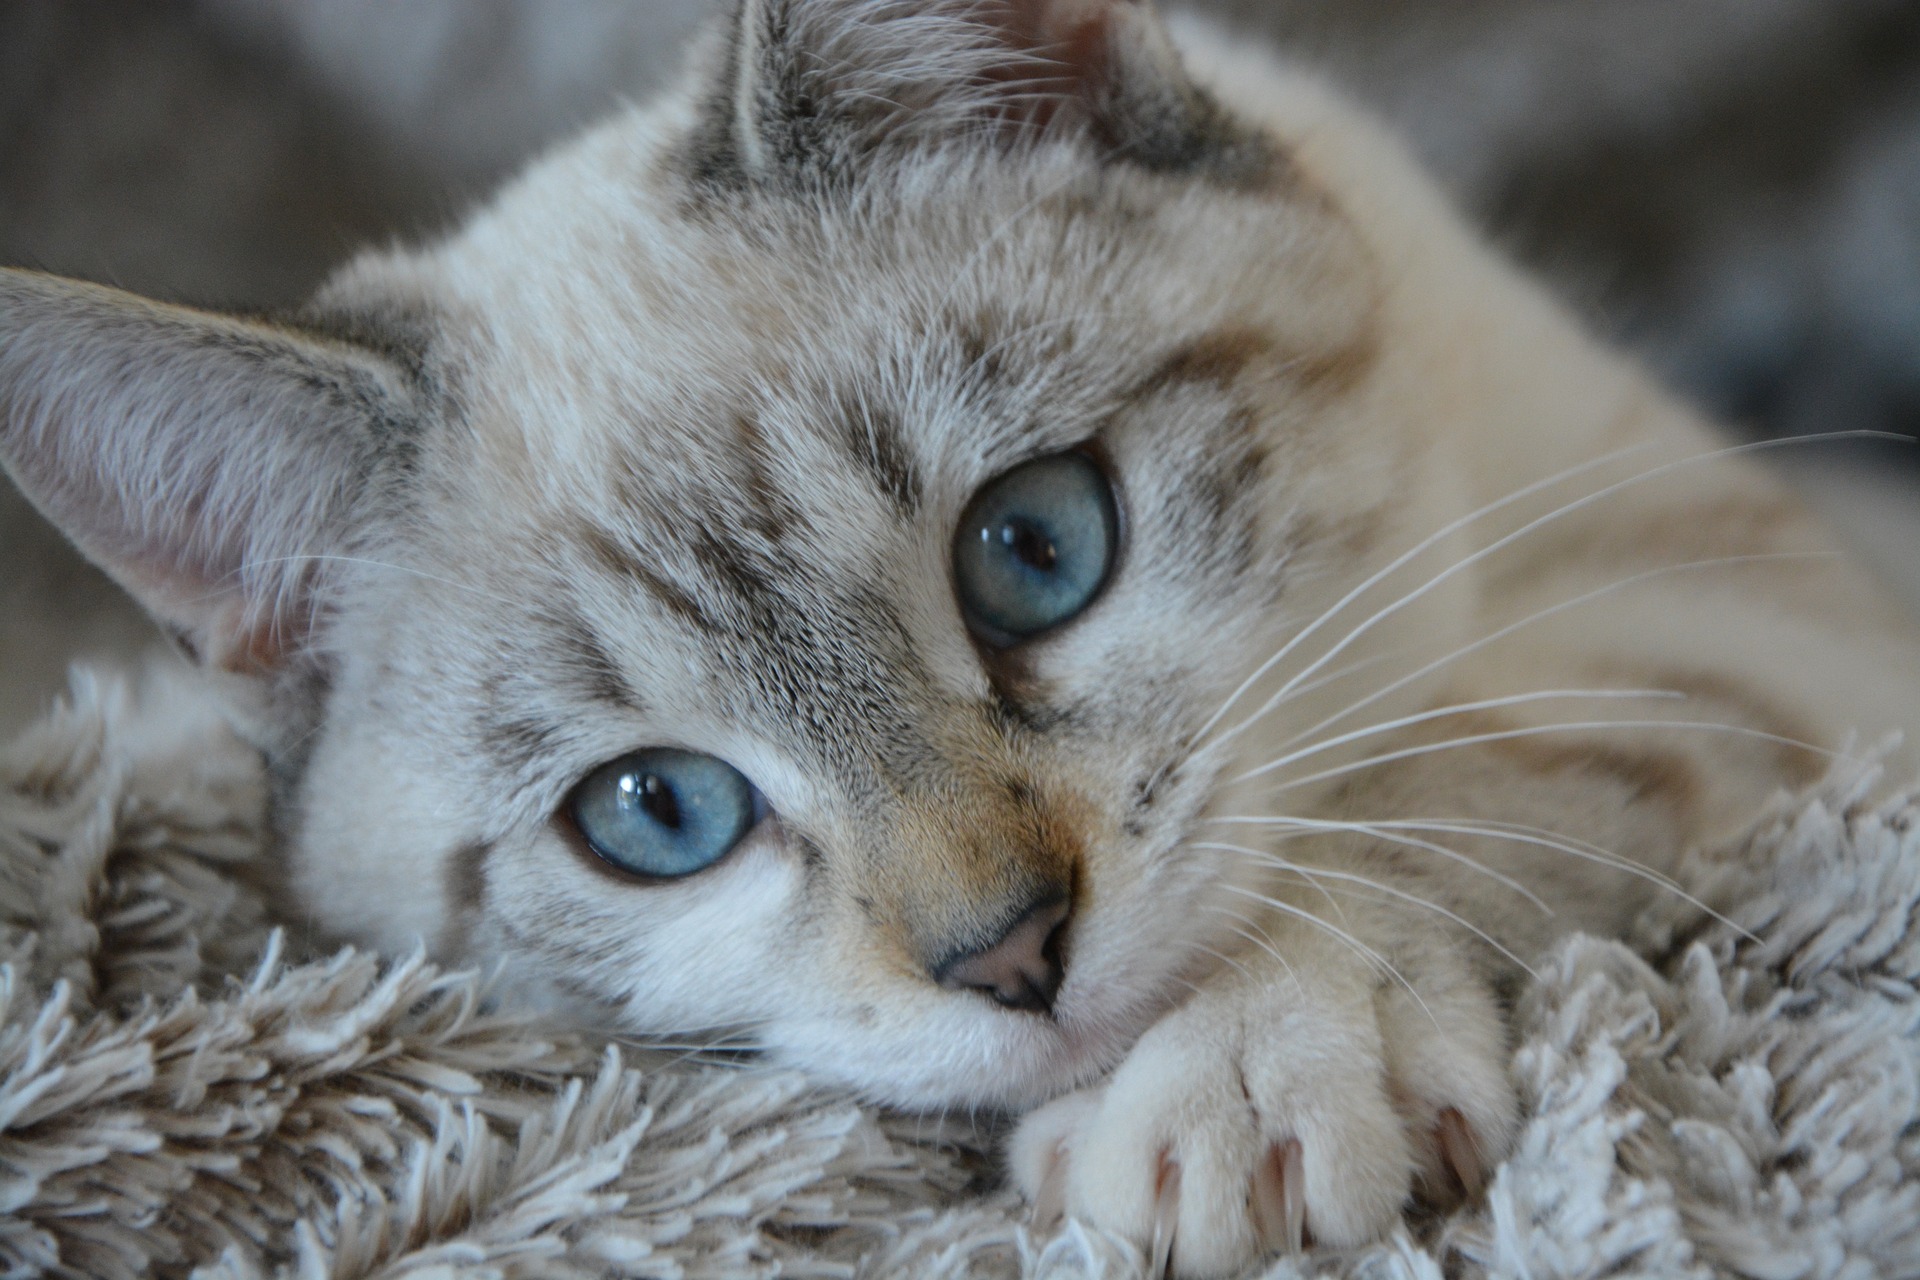 عکس حرفه ای گربه کیوت بامزه با ژست جذاب و دوست داشتنی